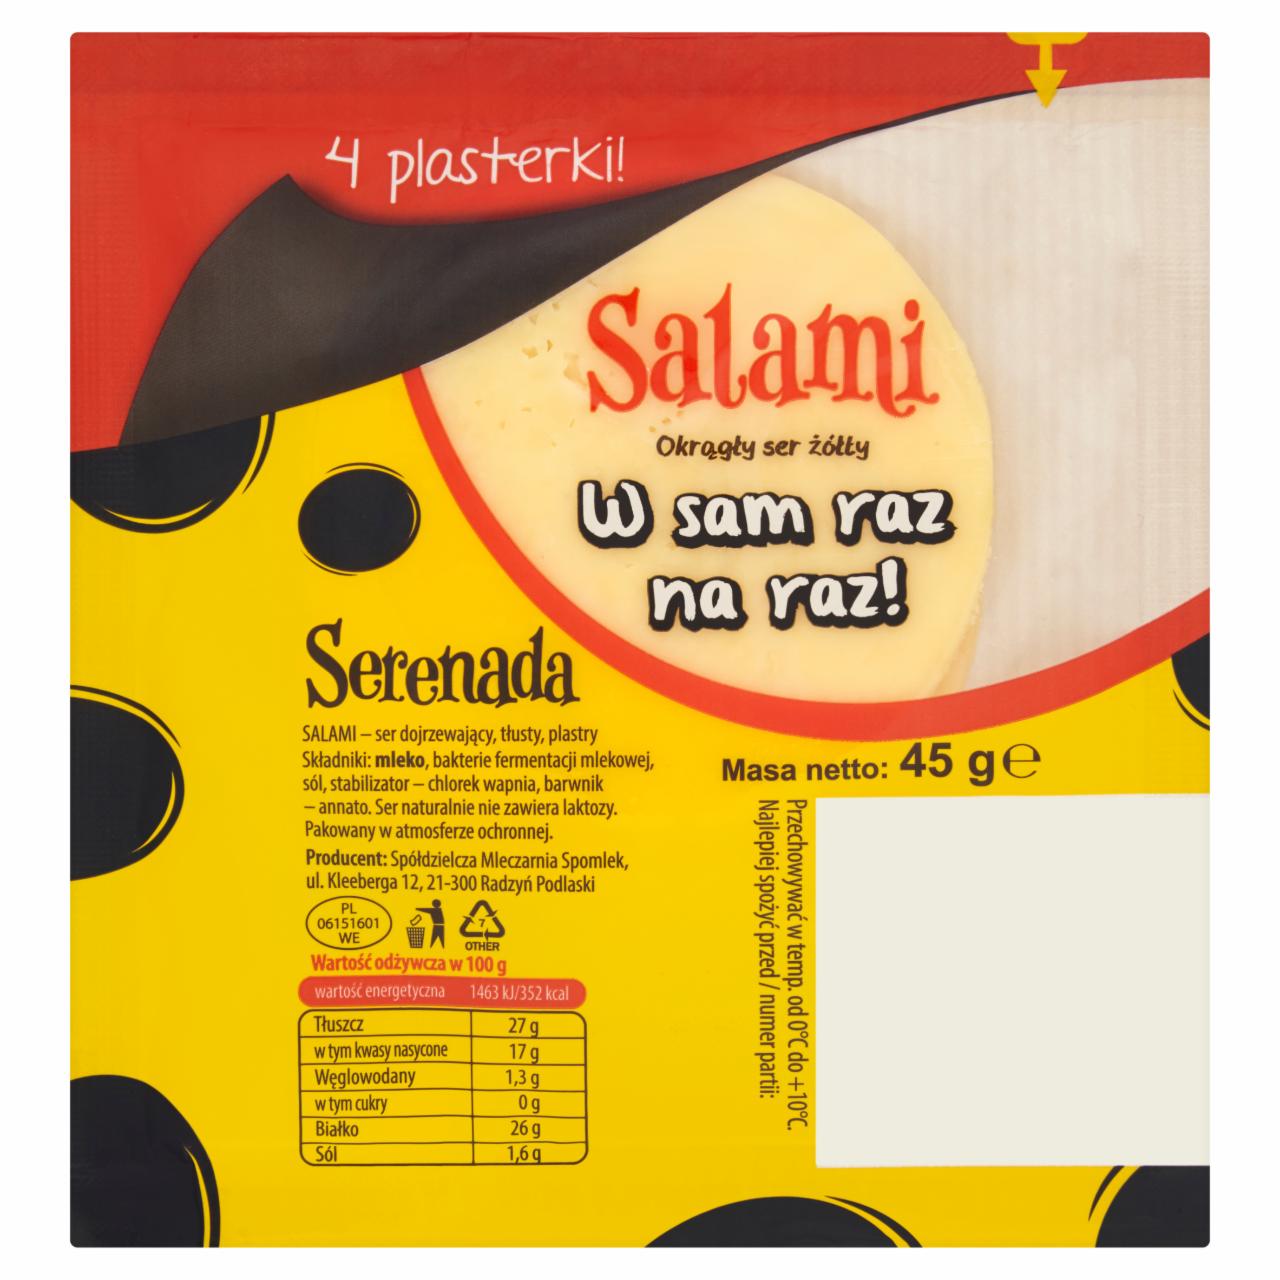 Zdjęcia - Serenada Okrągły ser żółty Salami 45 g